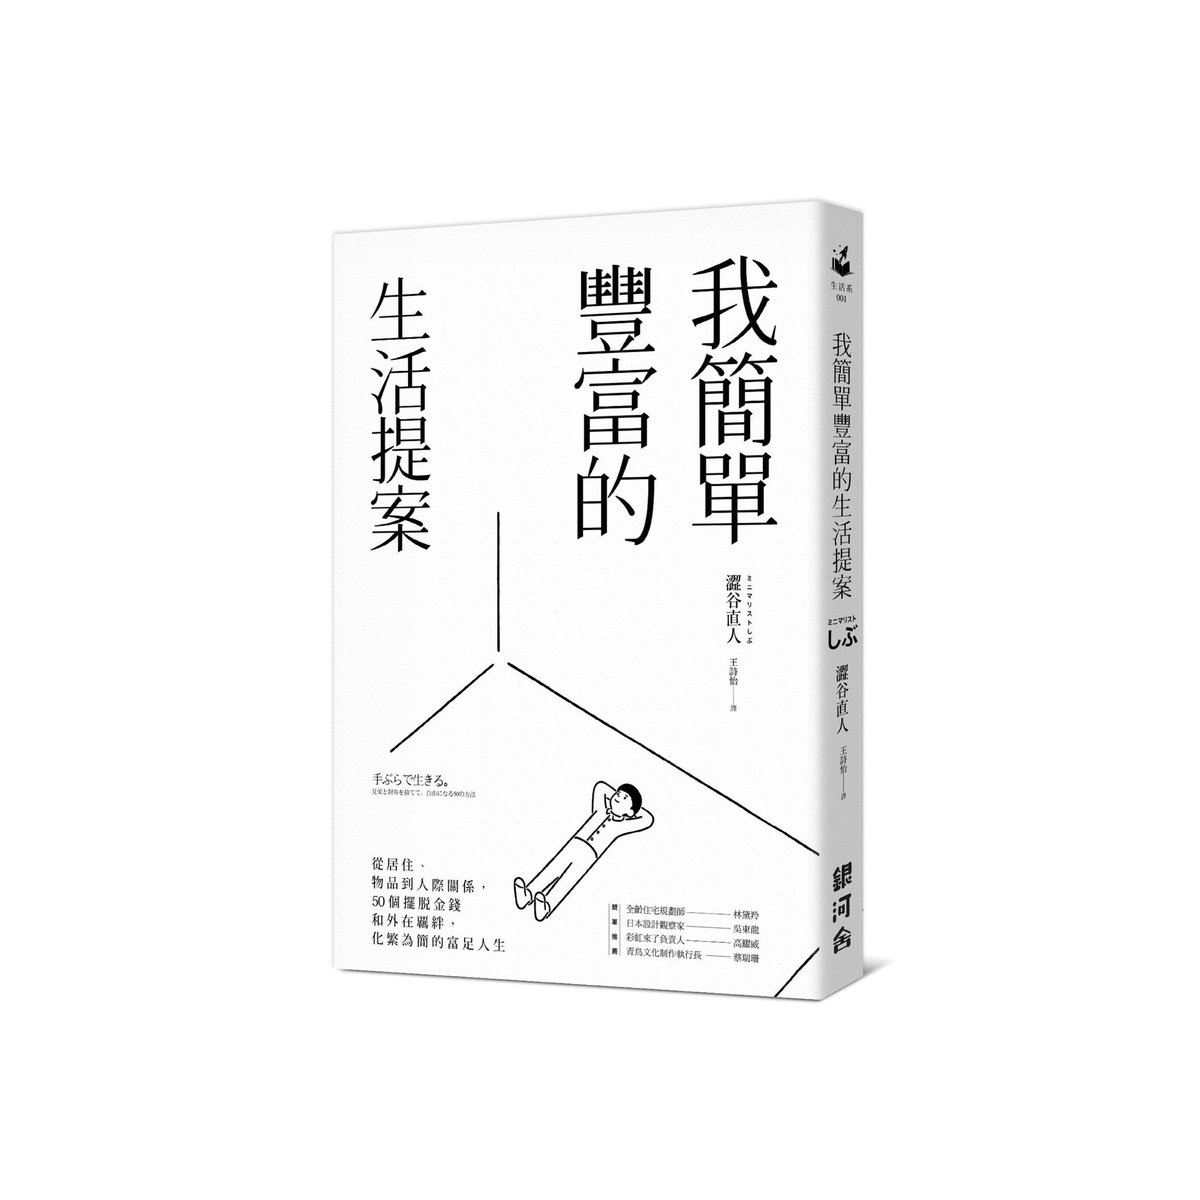 以前装画を担当しました、サンクチュアリ出版から発売された澁谷直人さんの書籍「手ぶらで生きる」が台湾の銀河舎からも発売されたそうです。
https://t.co/2BOuPviEeh 